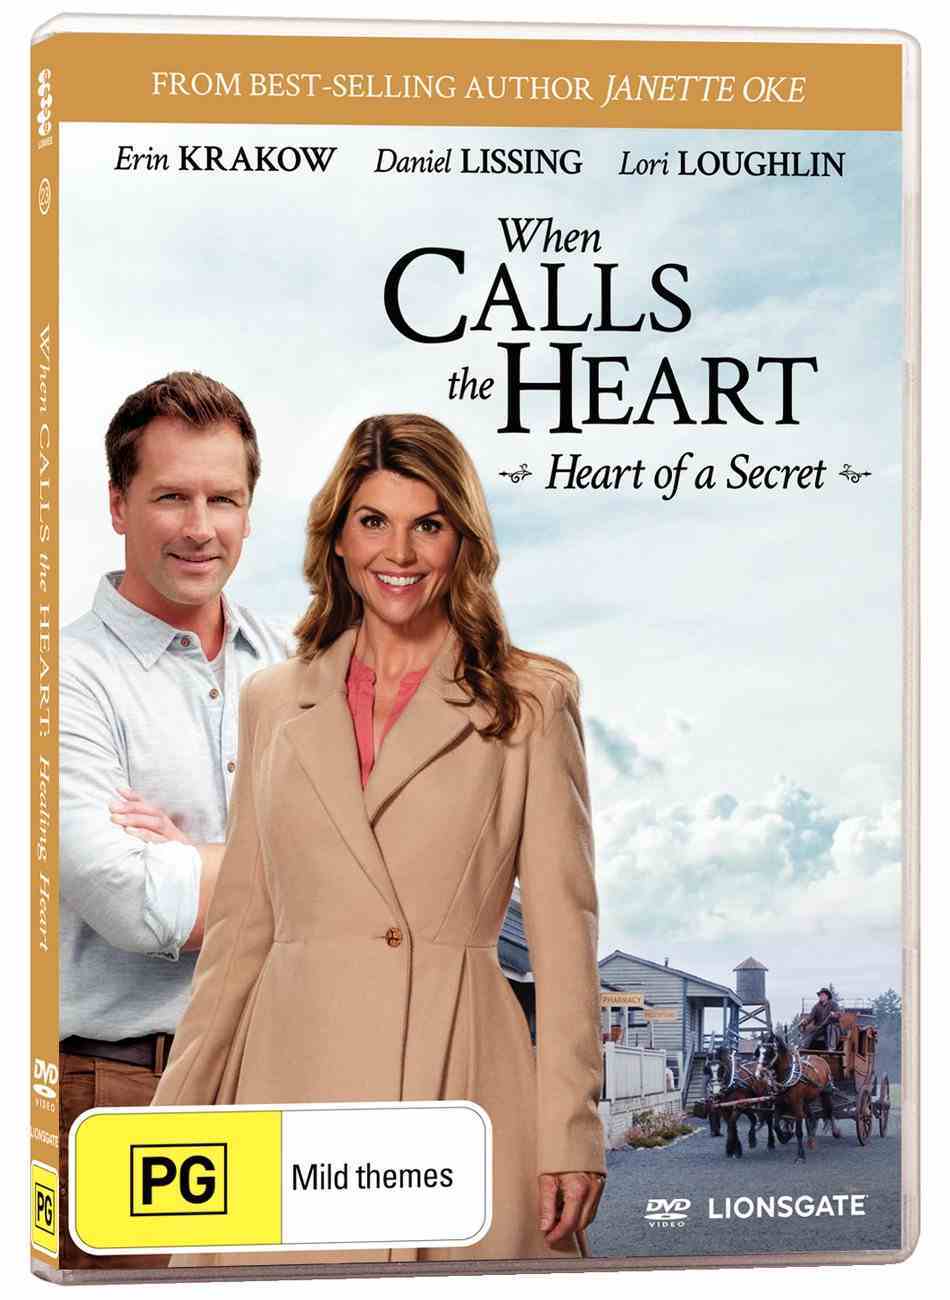 When Calls the Heart #23: Heart of a Secret DVD